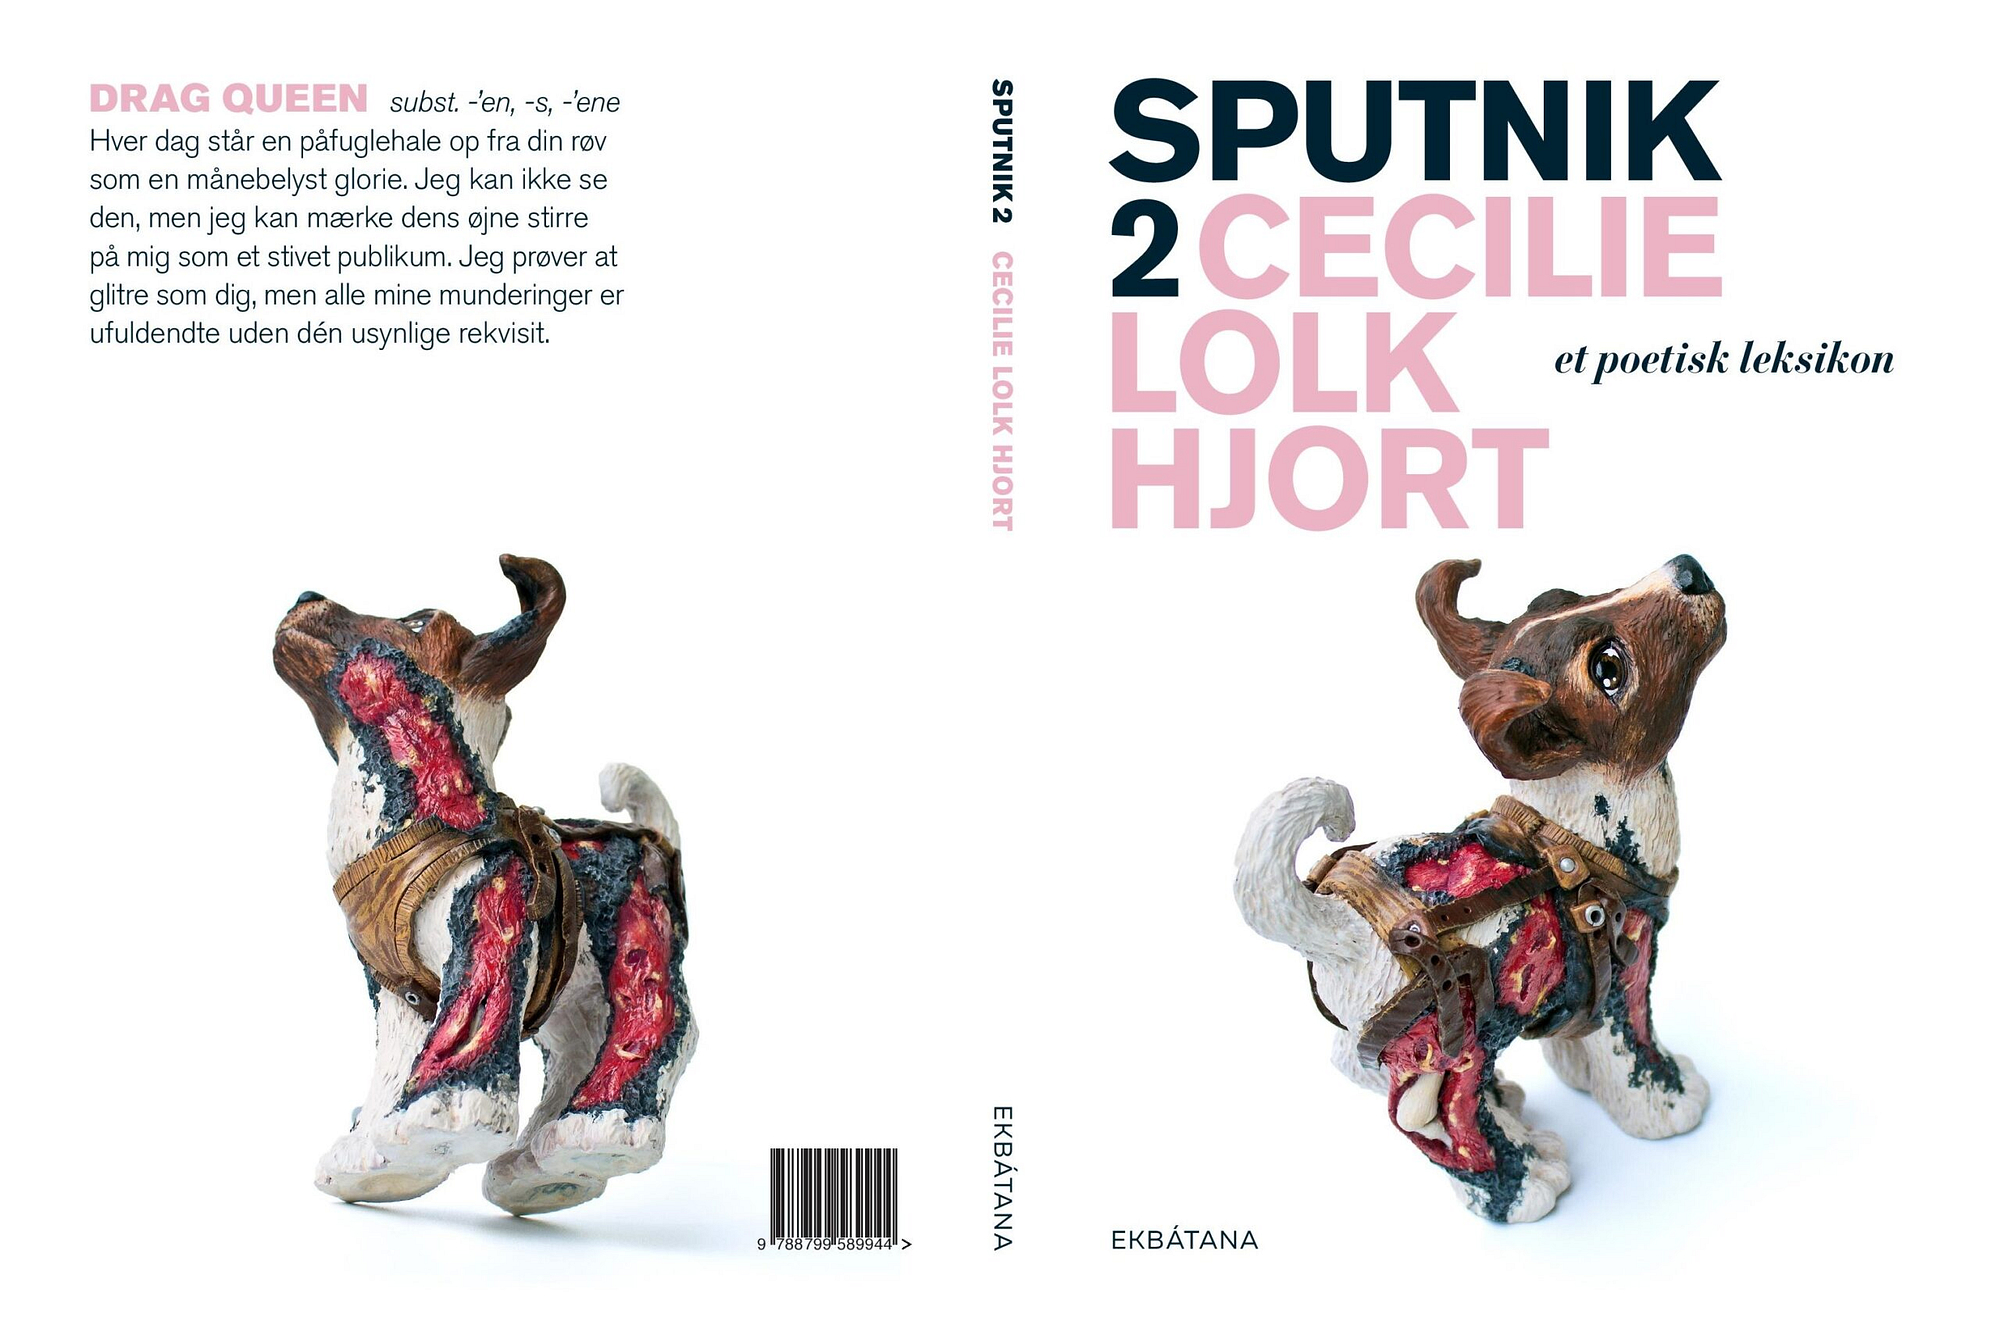 release på sputnik 2, Cecilie Lolk Hjort, Sputnik 2, poetisk leksikon, Galathea kroen